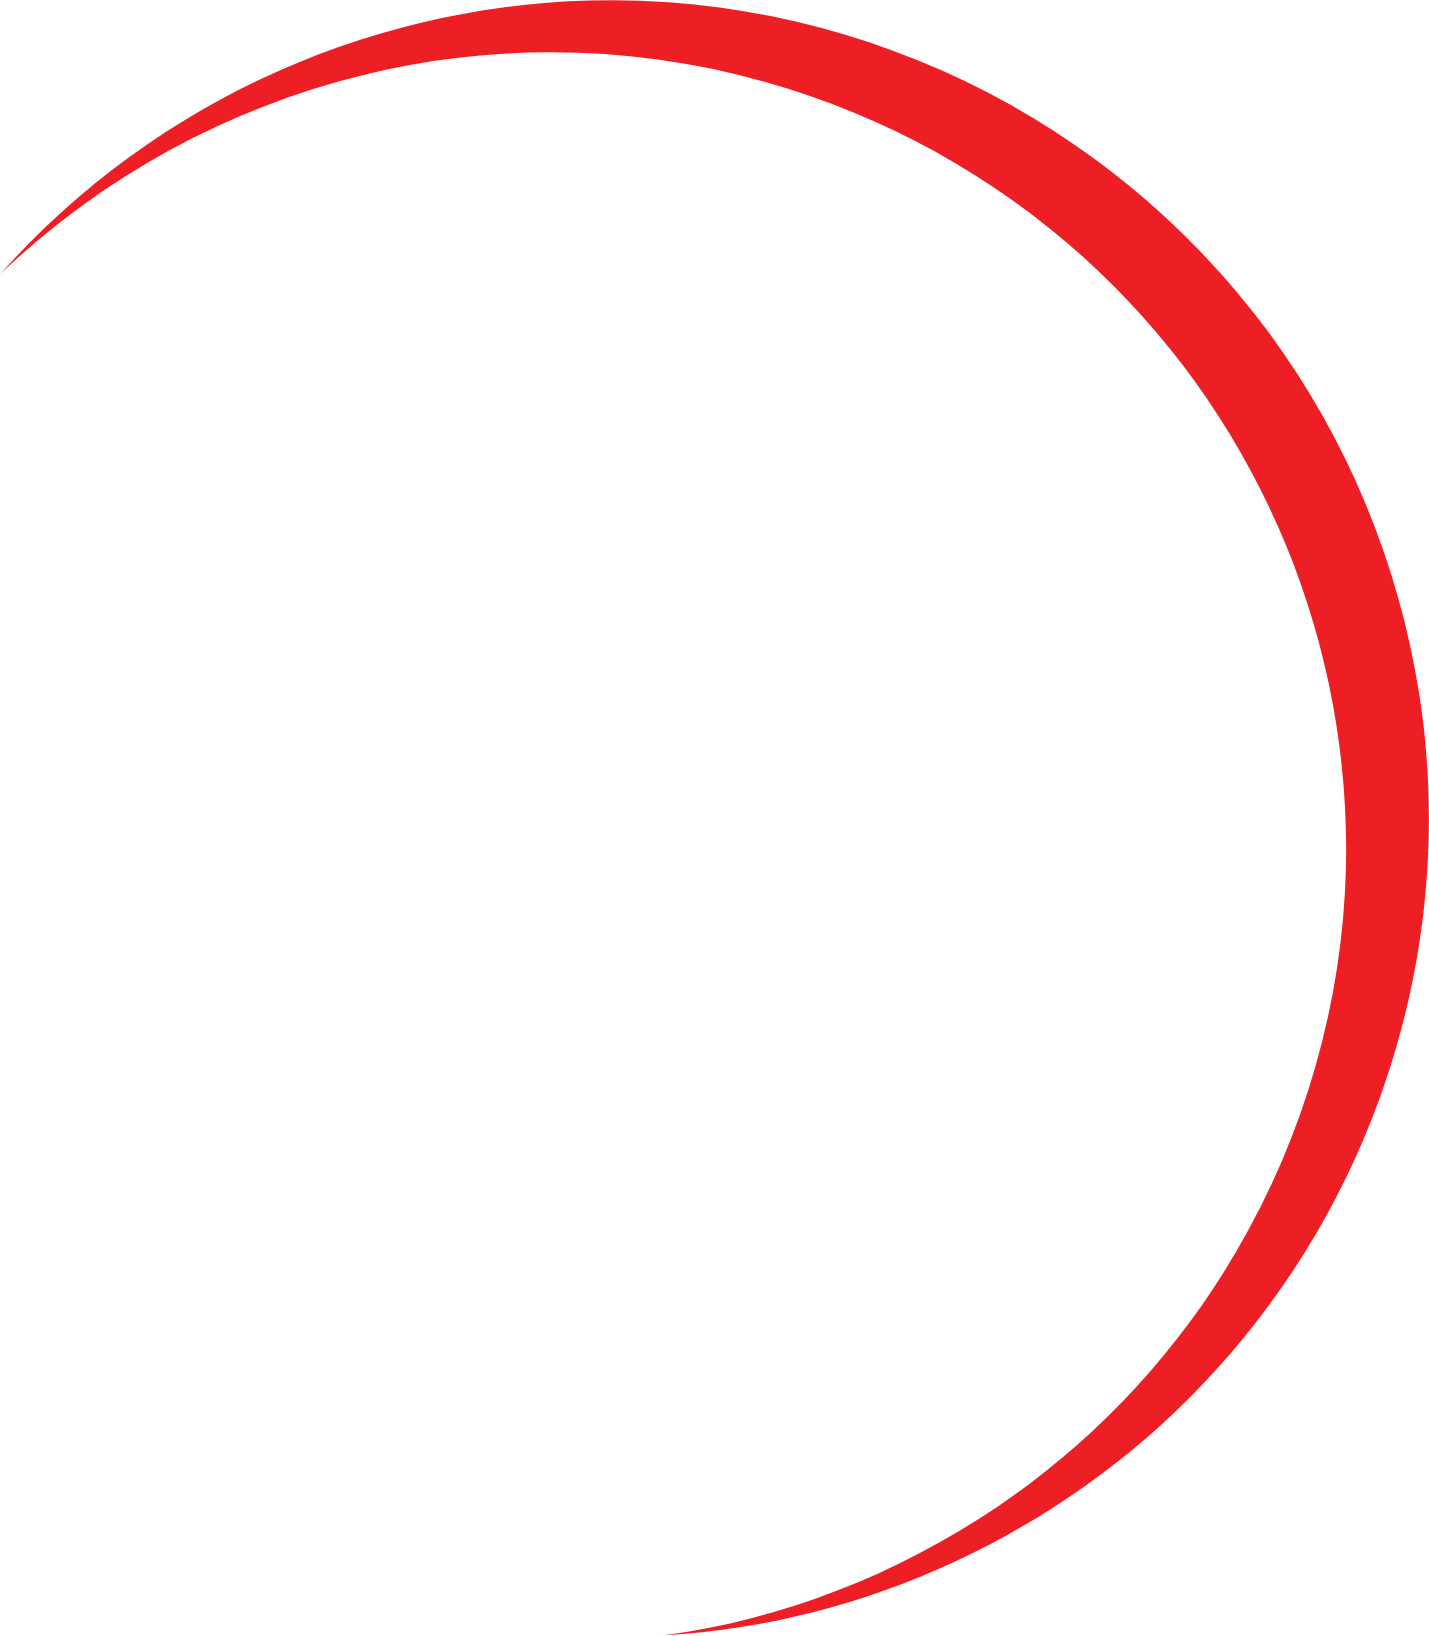 Planet13 logo pour fonds sombres (PNG transparent)